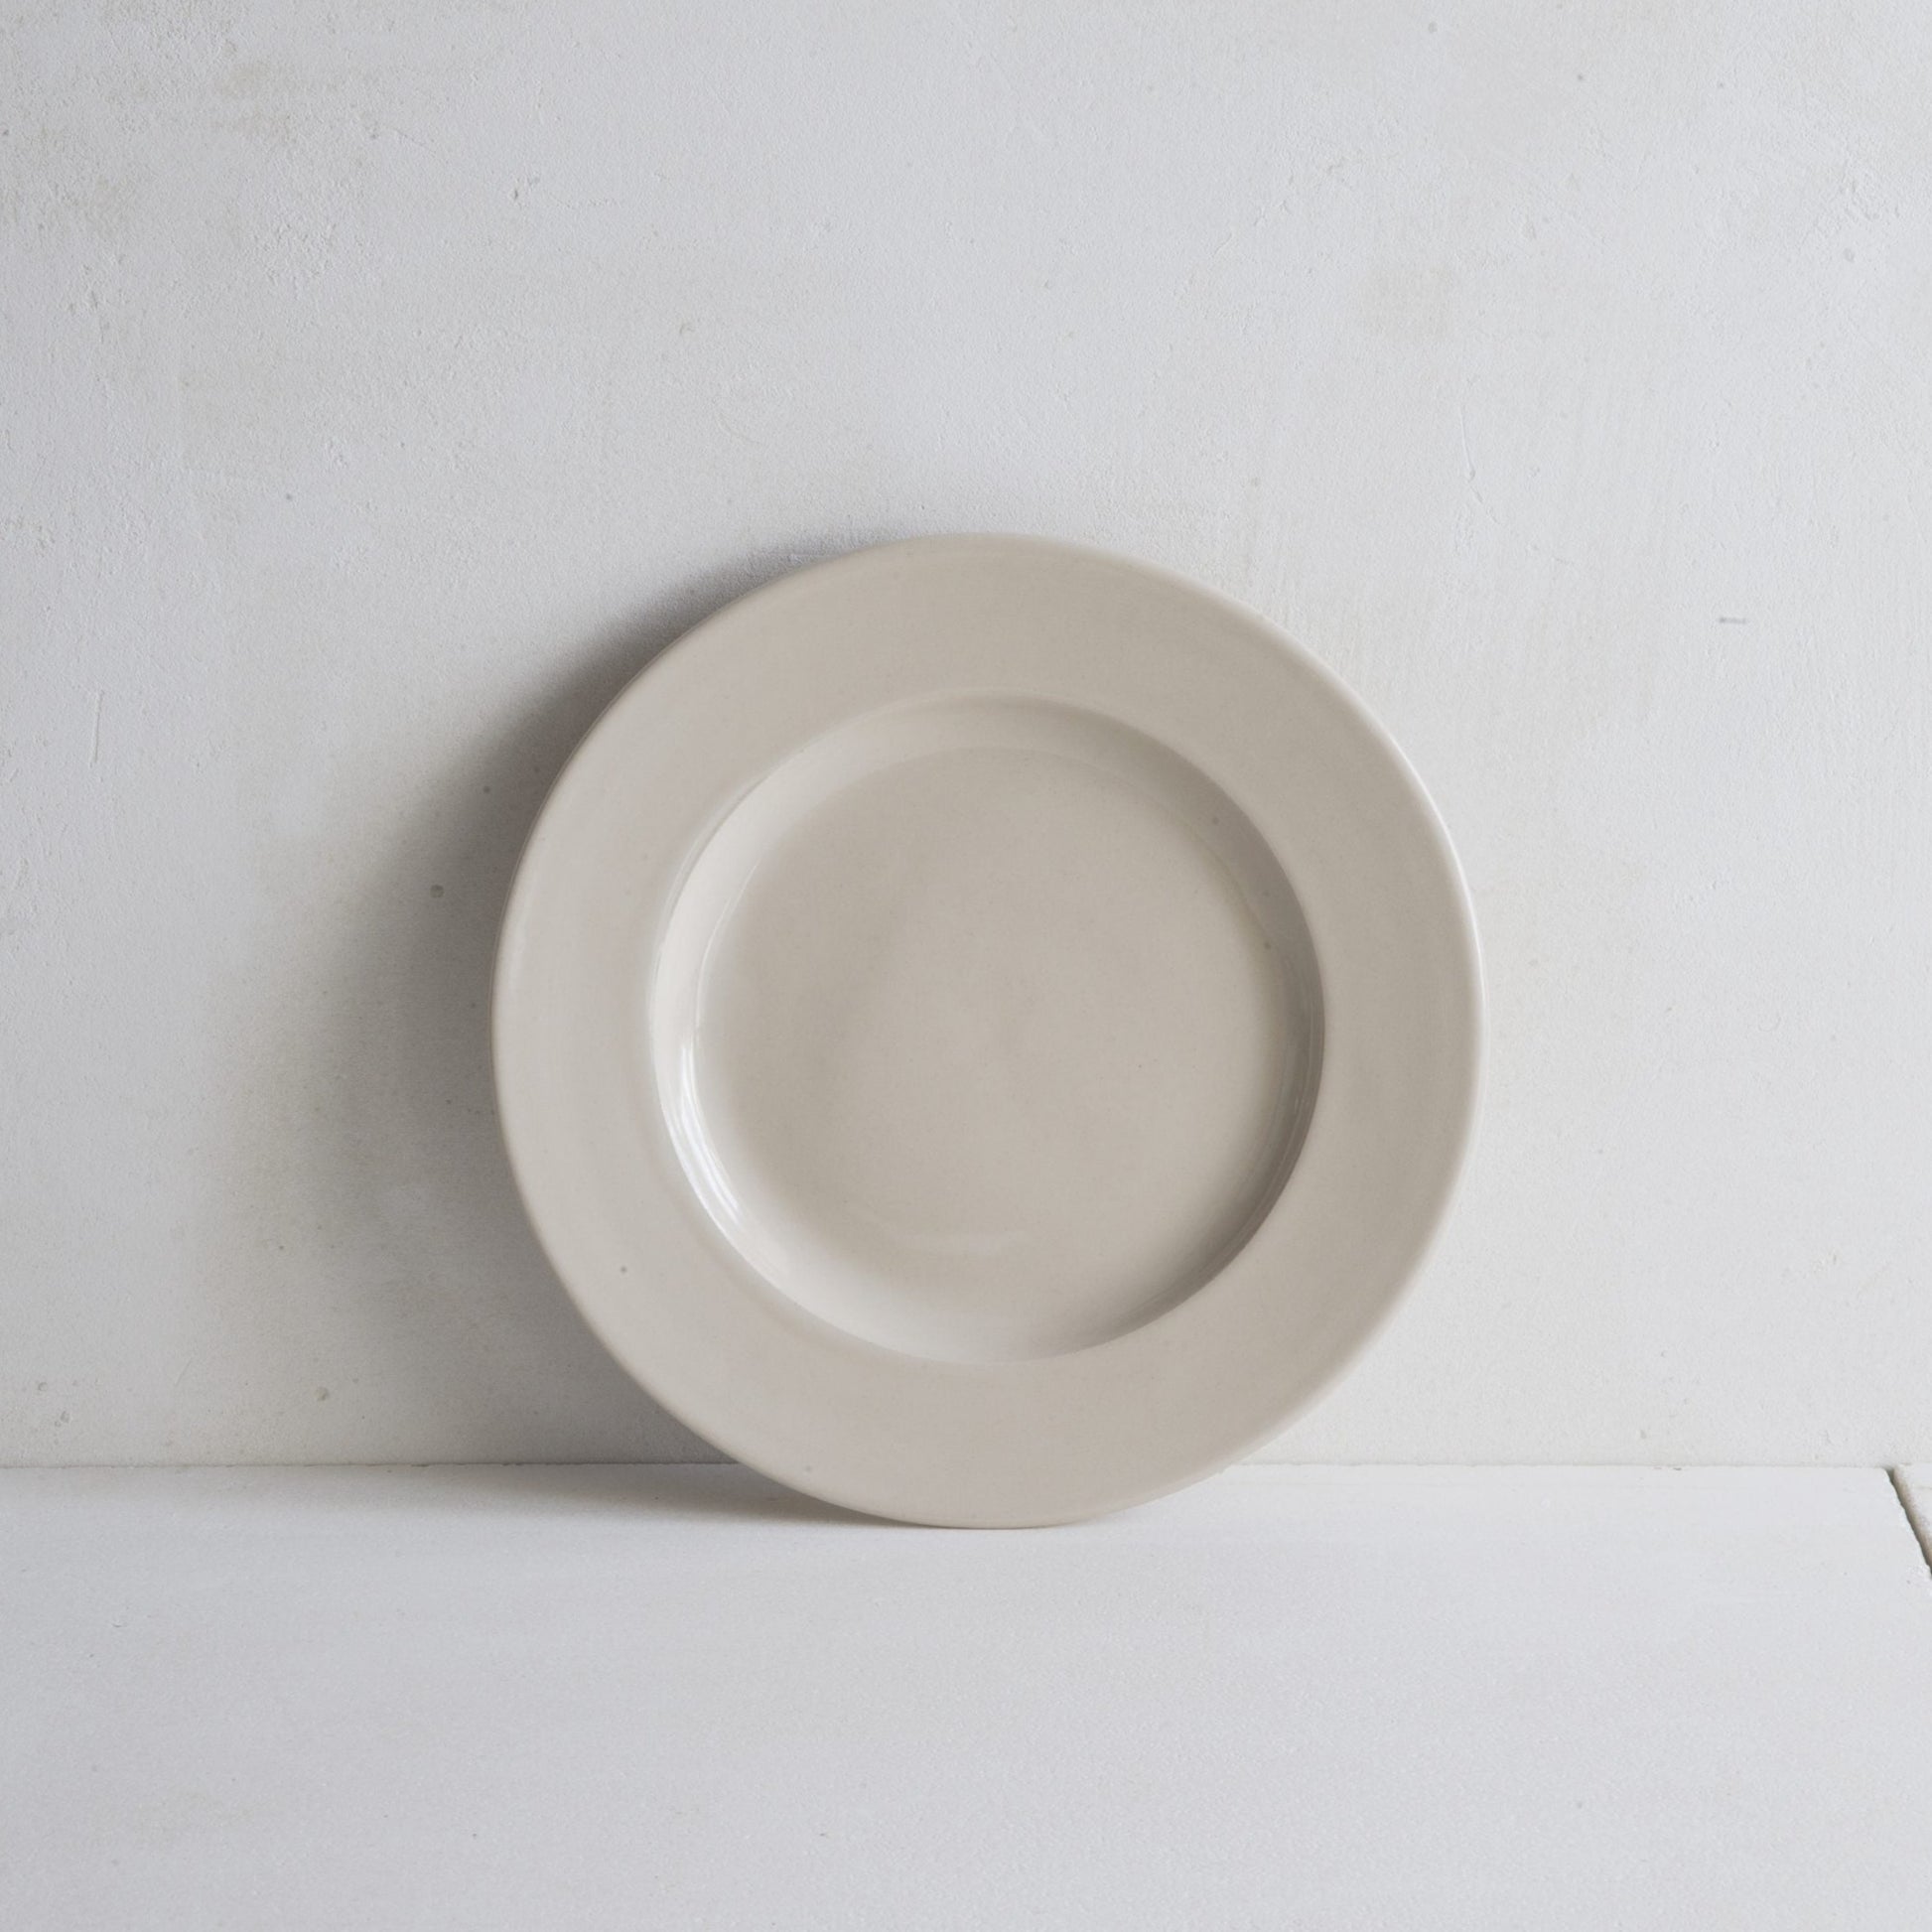 Classical Stoneware Side Plate | Luxury Dinnerware | Handmade in UK